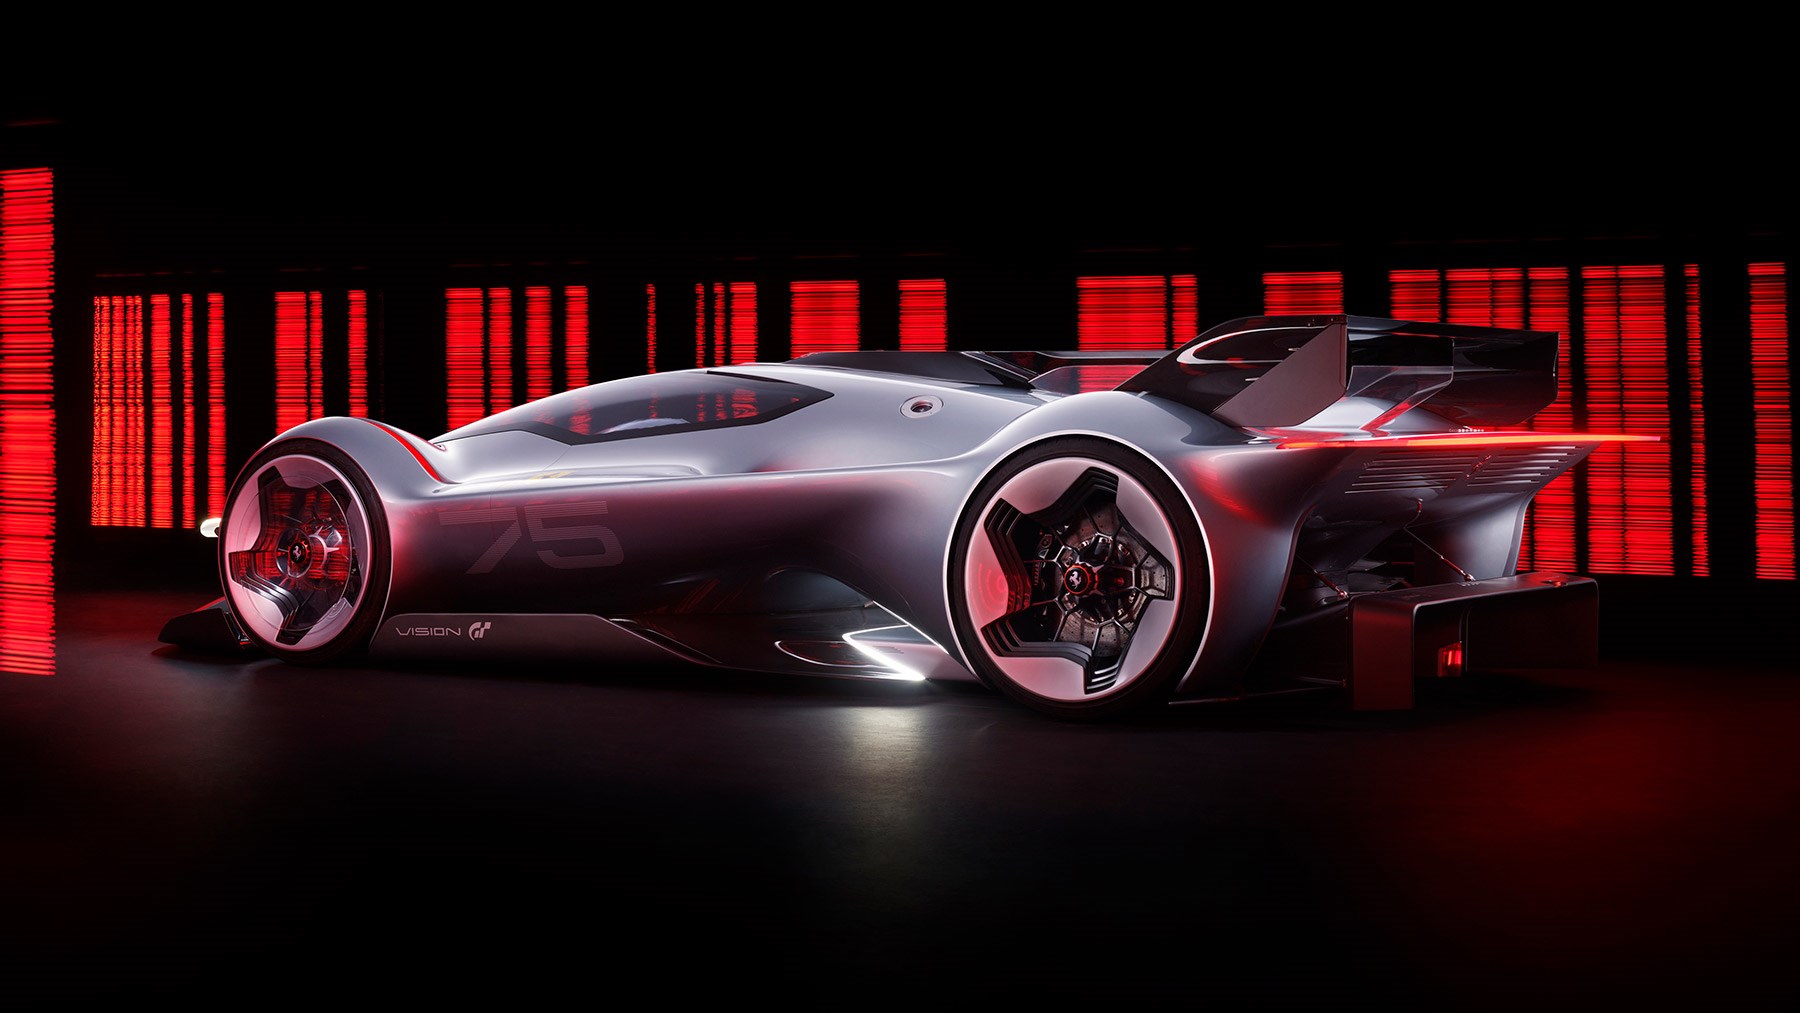 Gran Turismo 7 - Ferrari Vision Gran Turismo Unveiled